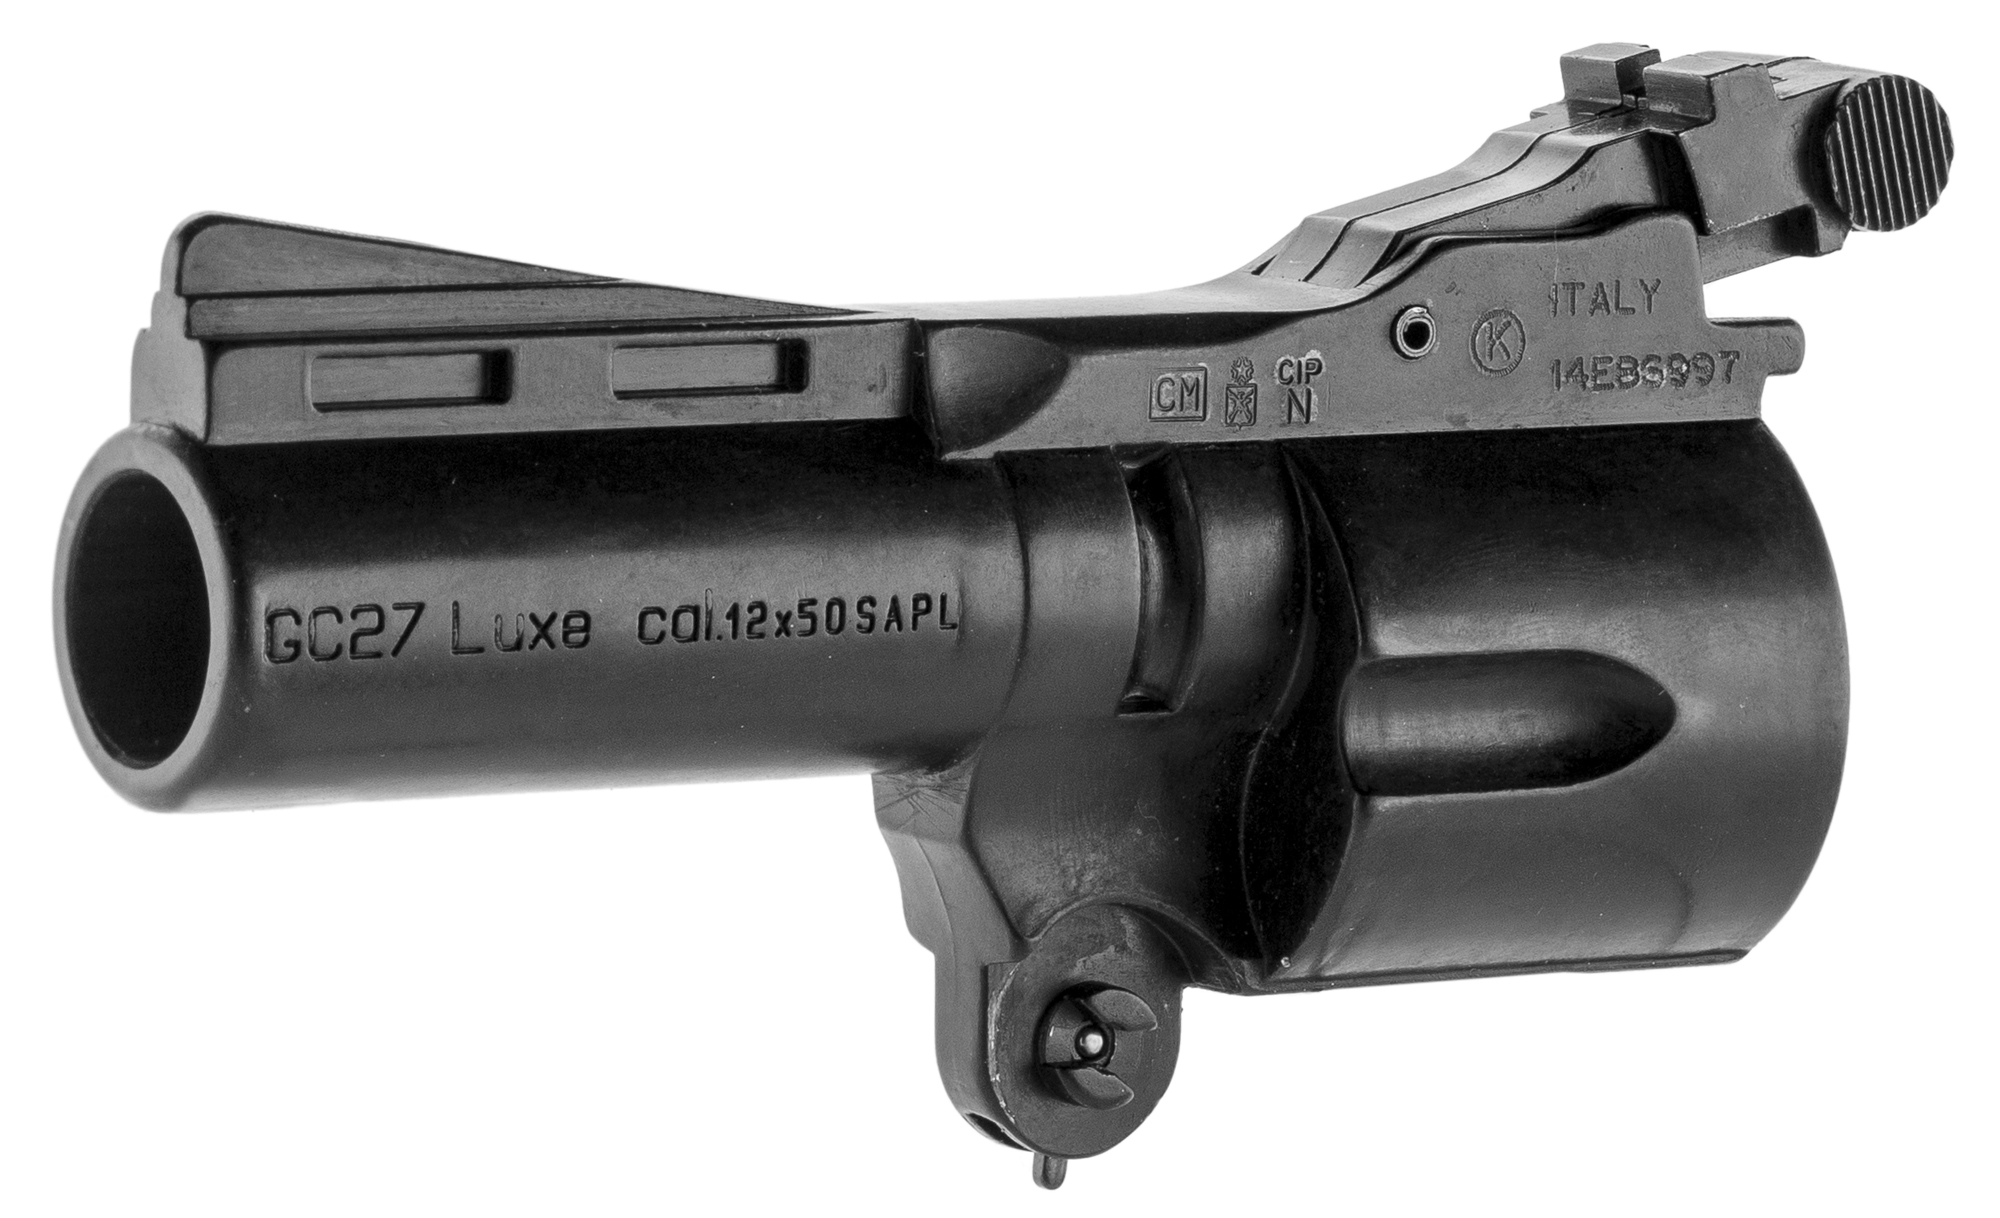 Pack de défense - Pistolet GC27 Gomm-cogne - SAPL - Arme de